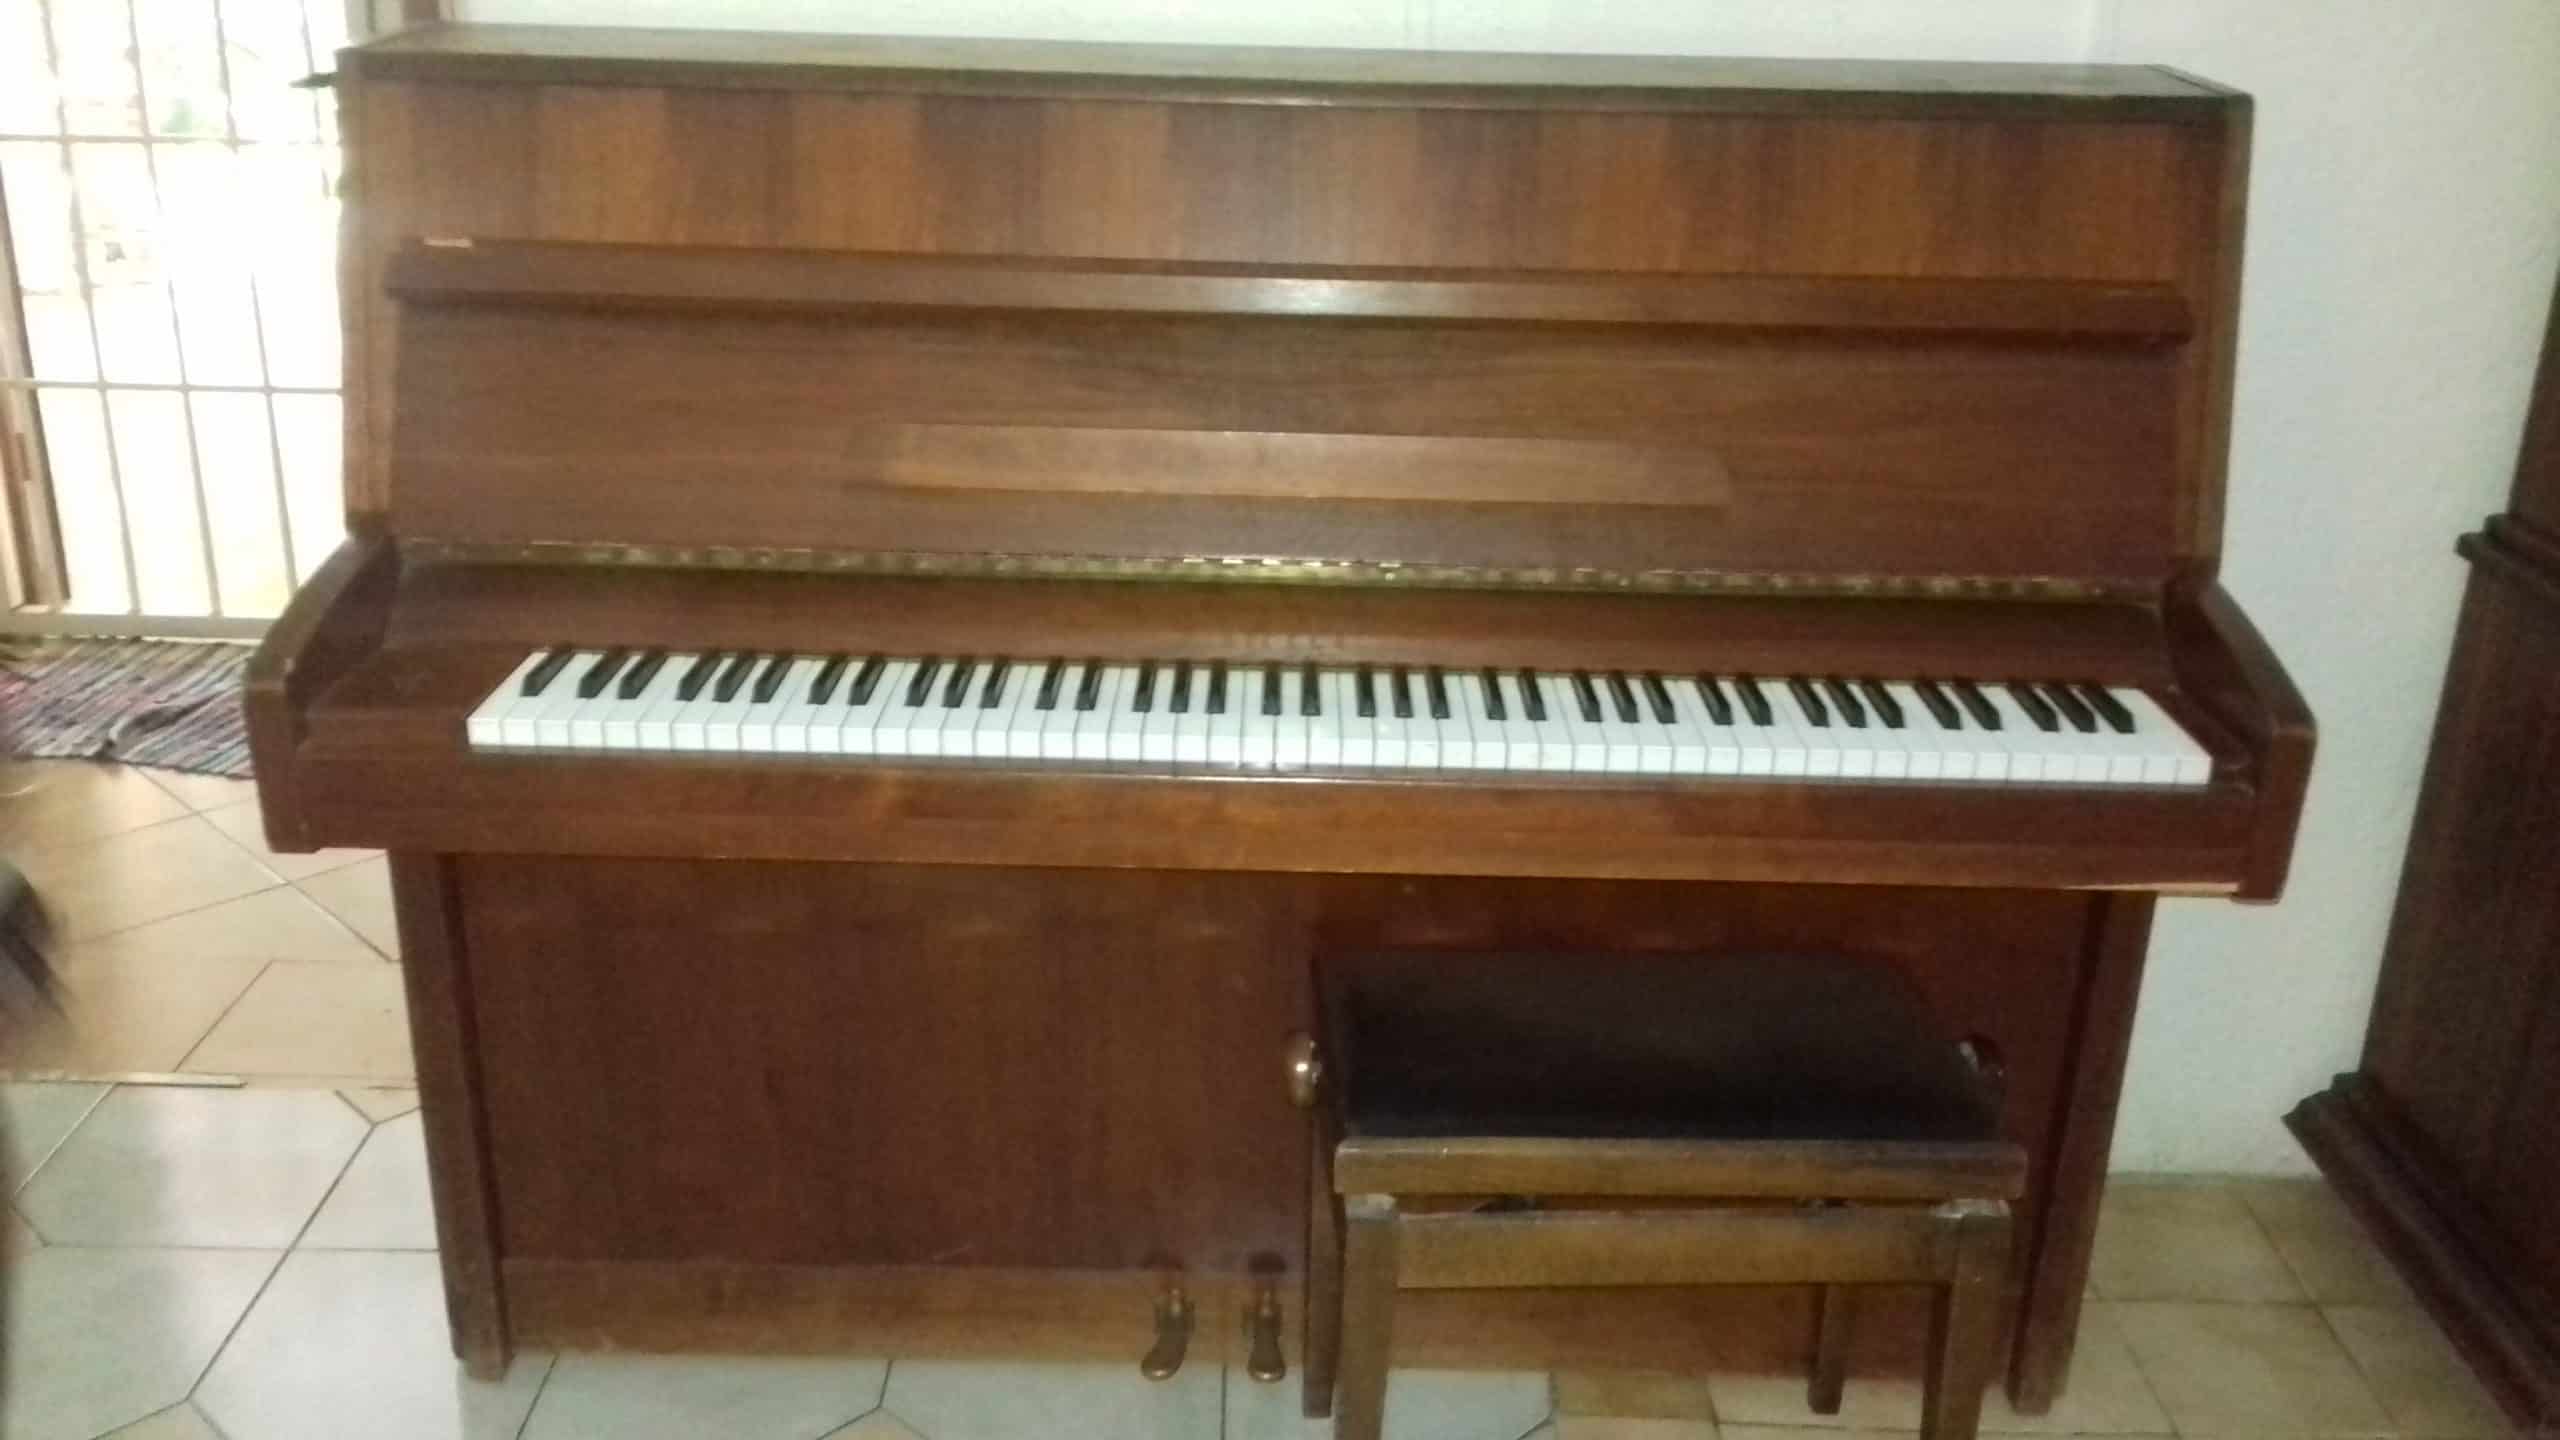 A vendre Piano à queue